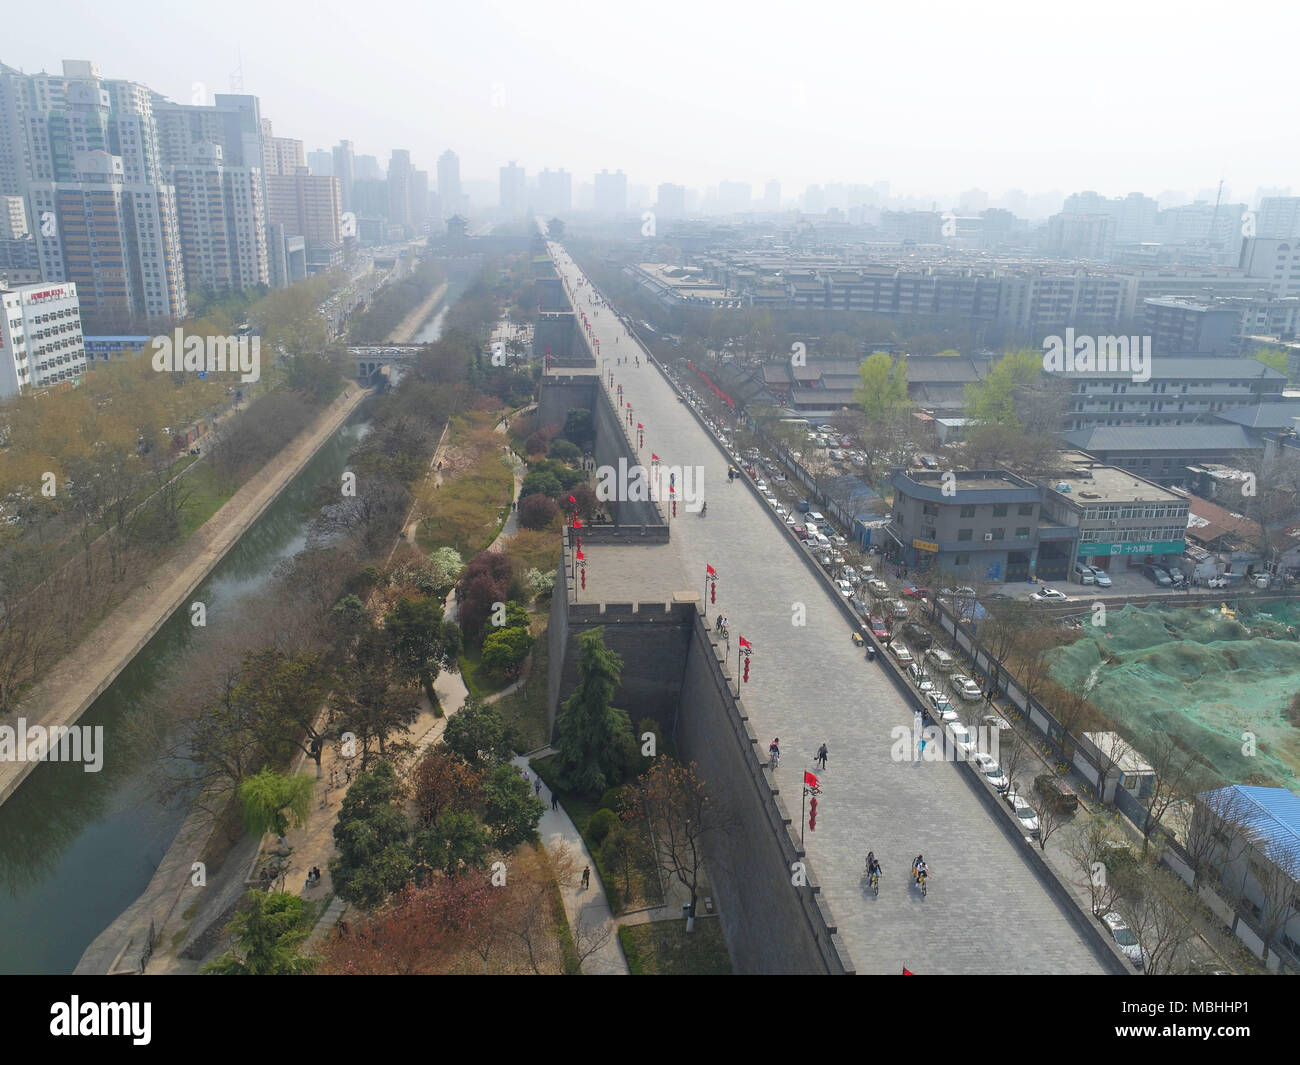 7 avril 2018 - Xi'An, Xi'an, Chine - Xi'an, Chine 7 avril 2018 : photographie aérienne de Xi'an, province du Shaanxi du nord-ouest de la Chine. Crédit : SIPA Asie/ZUMA/Alamy Fil Live News Banque D'Images